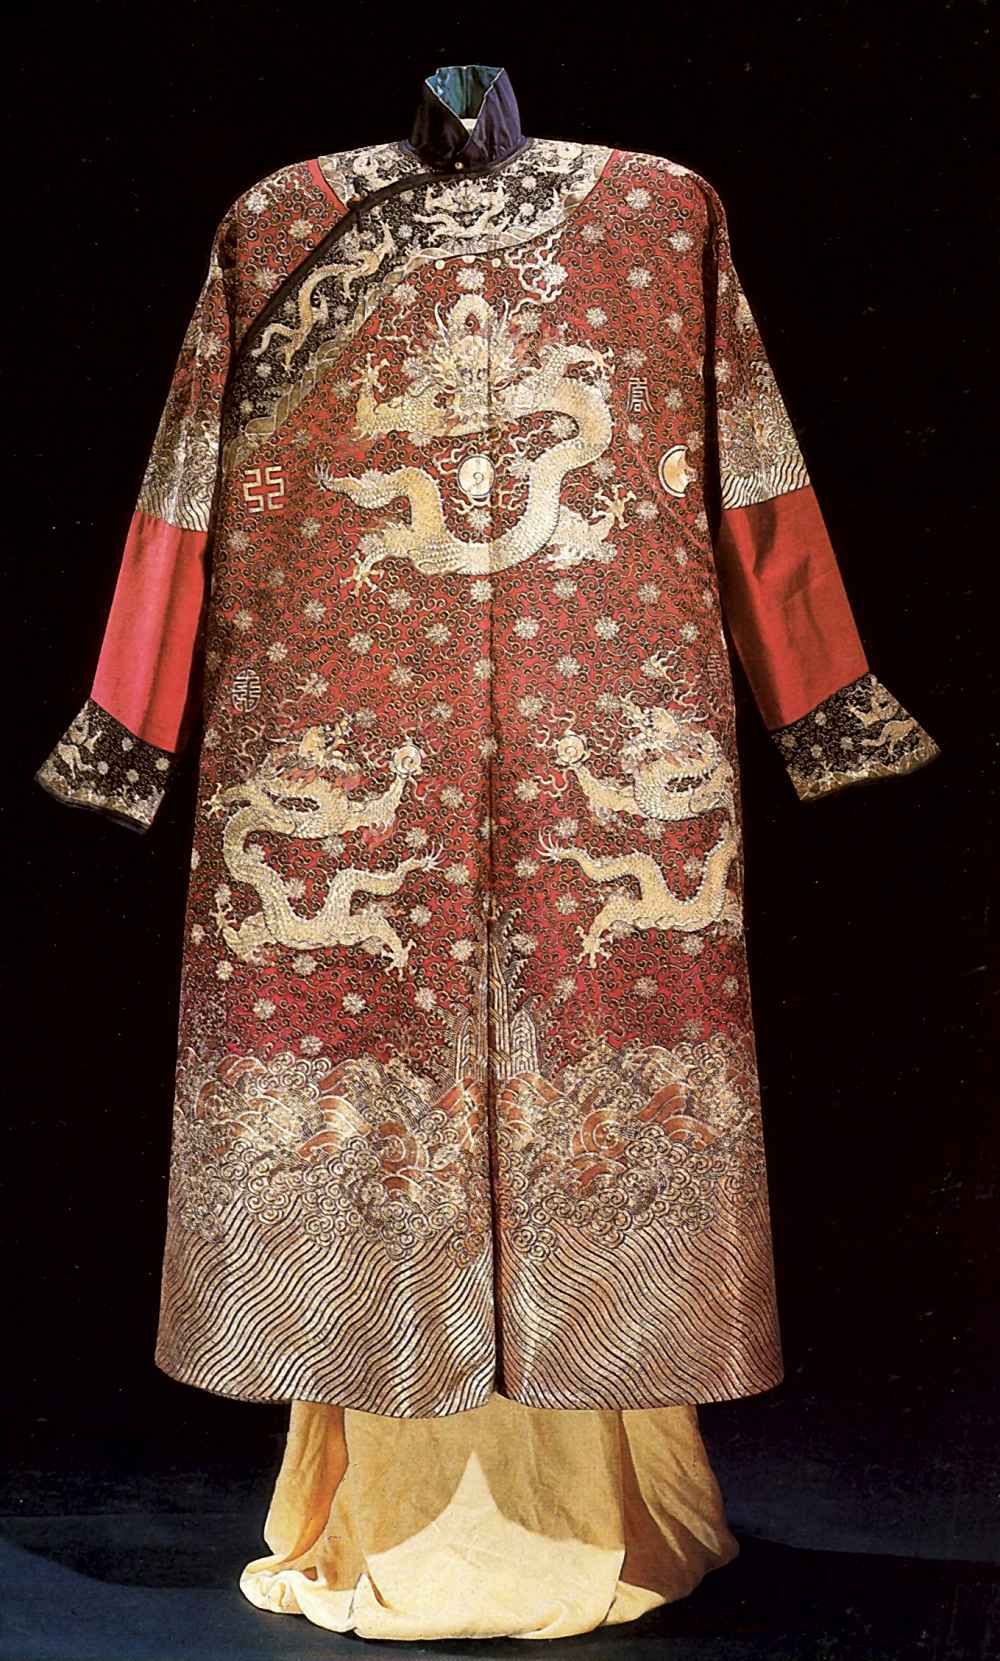 Повседневное платье императора с изображением драконов <br>17-19 век <br>Вышивка по шелку 